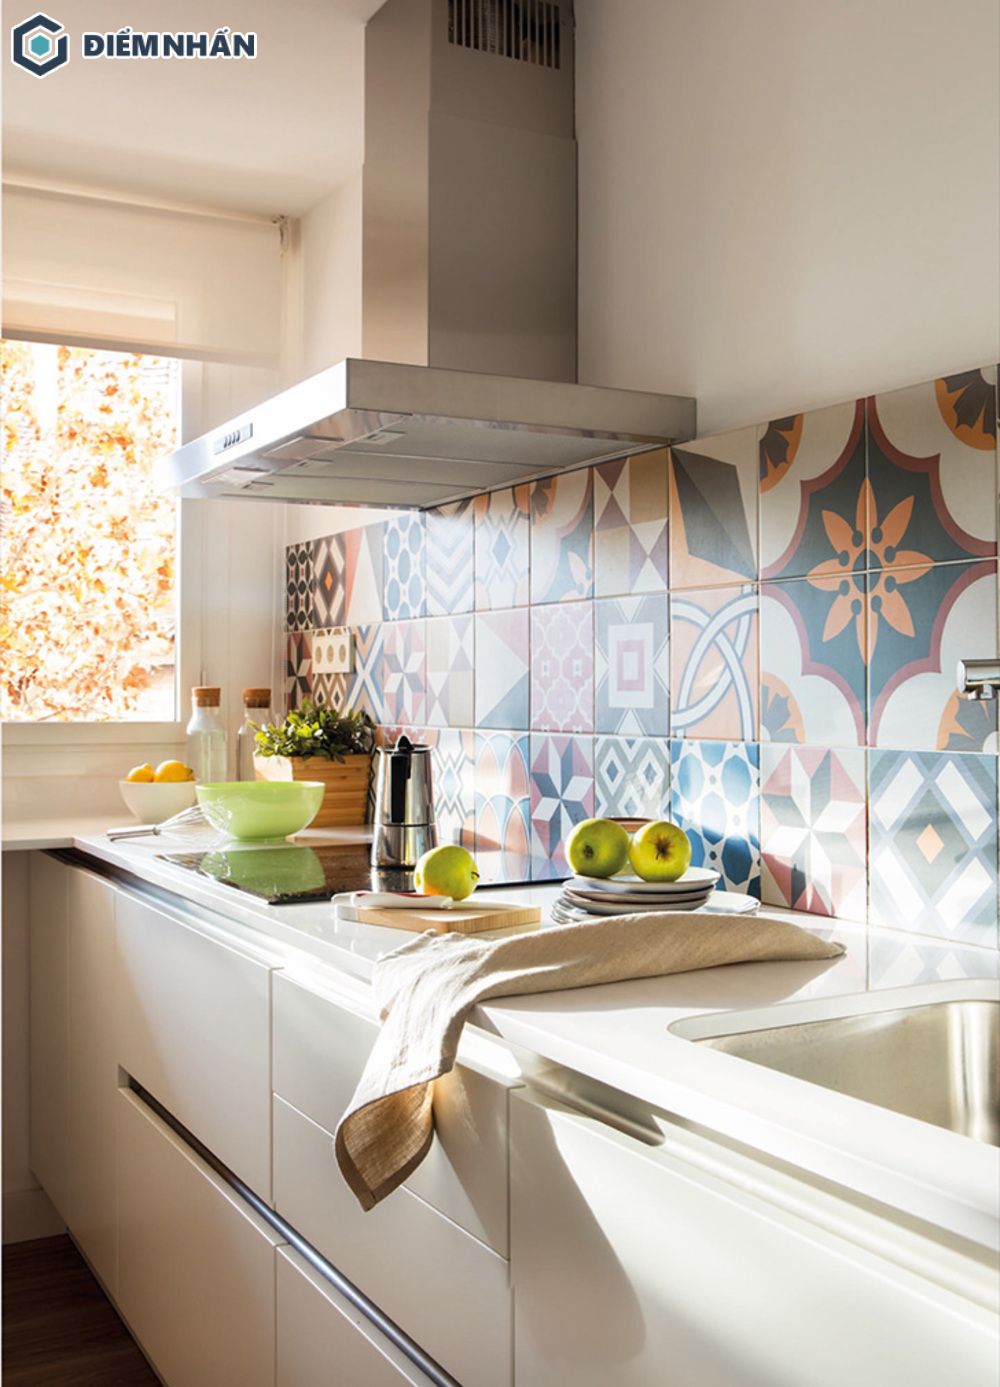 Gạch hoa ốp tường tạo điểm nhấn giúp khu bếp trở nên thu hút hơn